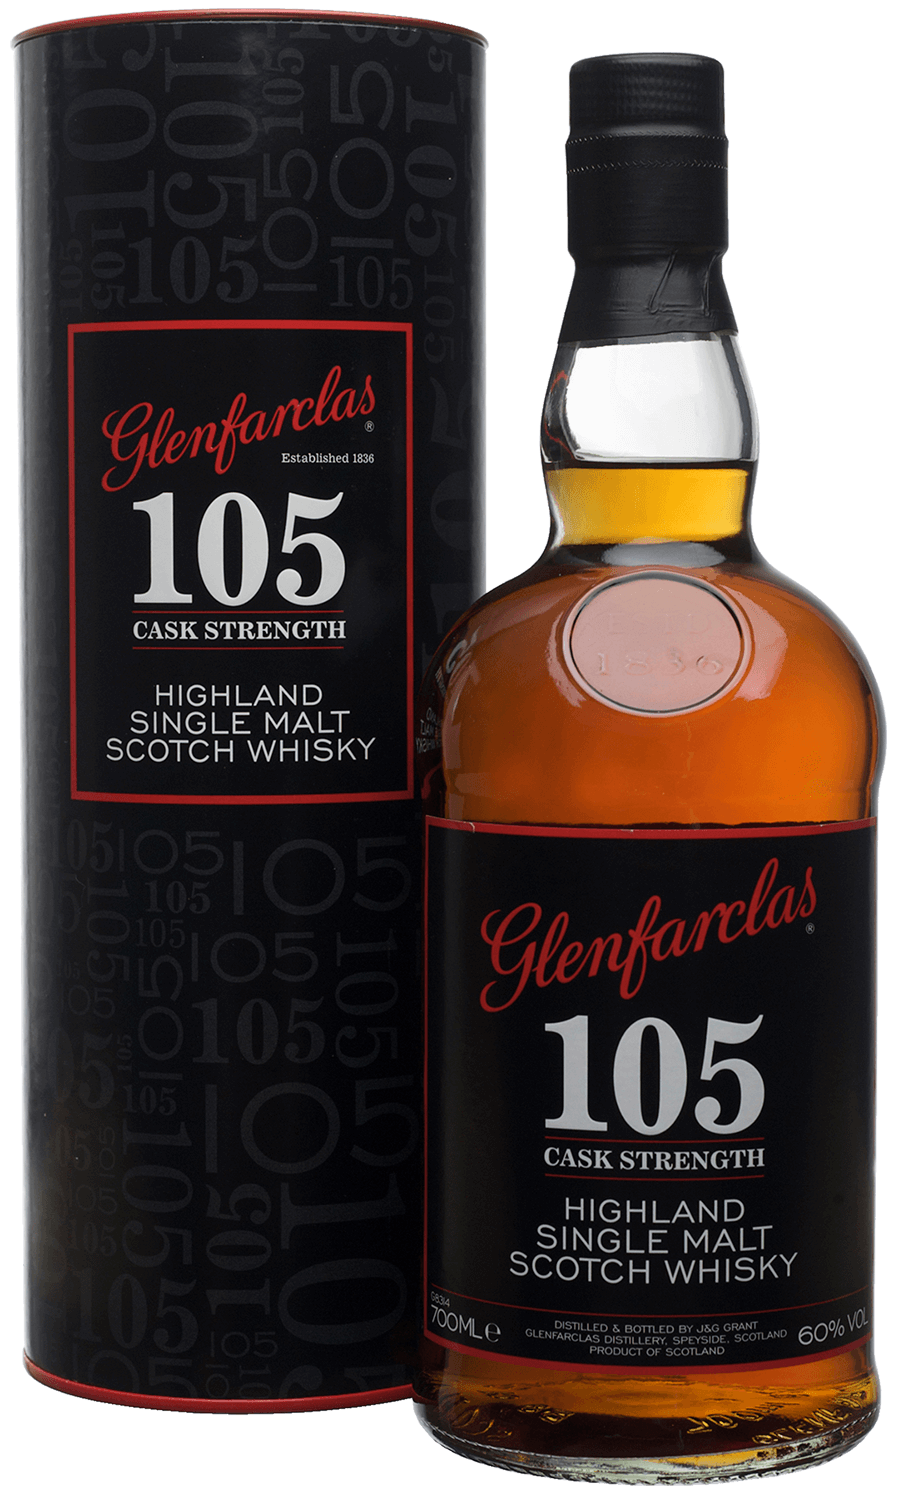 Glenfarclas 105 Single Malt Scotch Whisky (gift box)